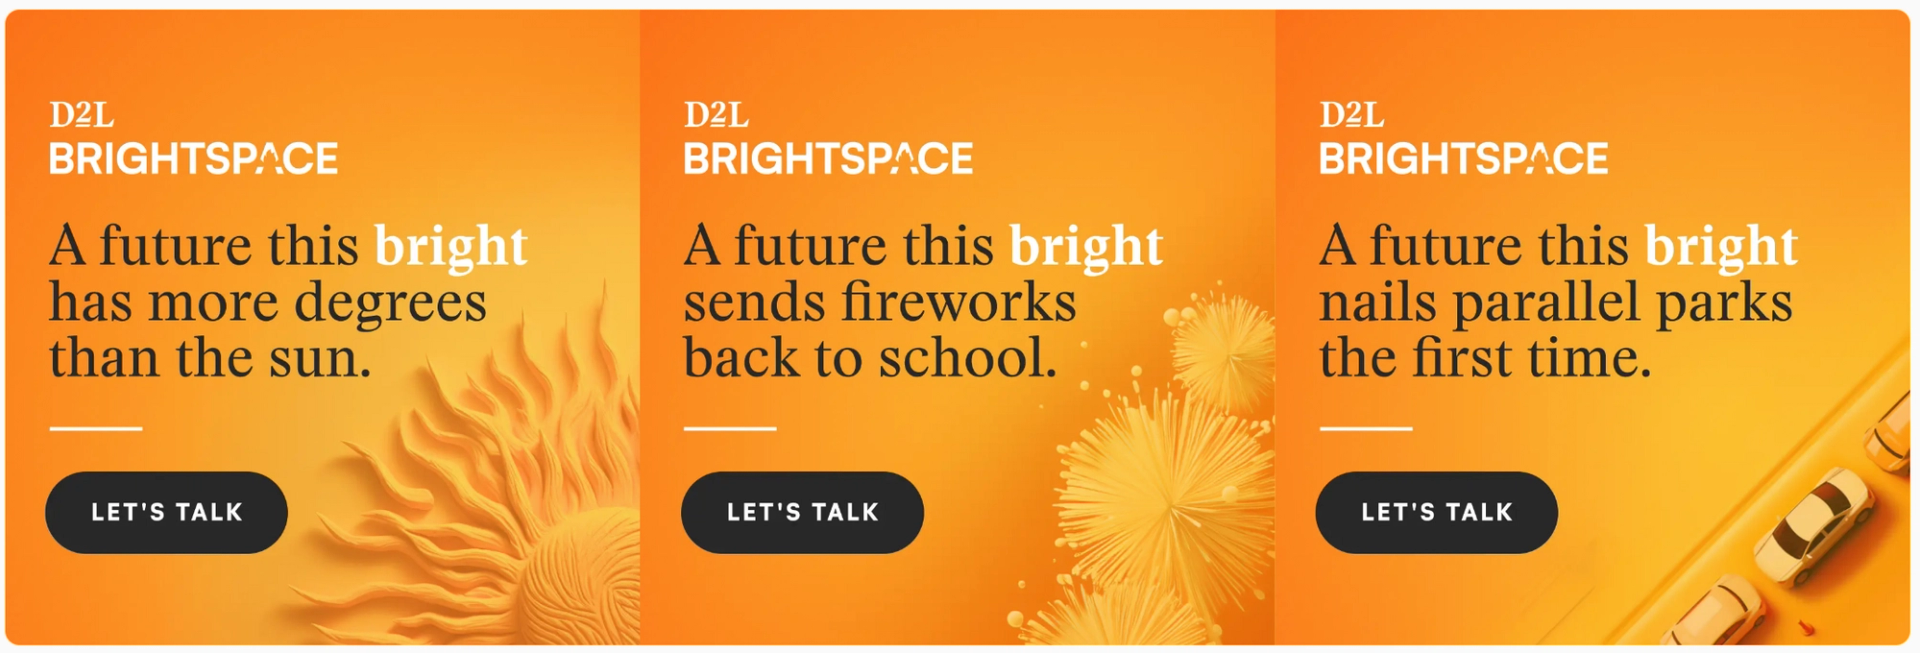 D2L Brightspace ads